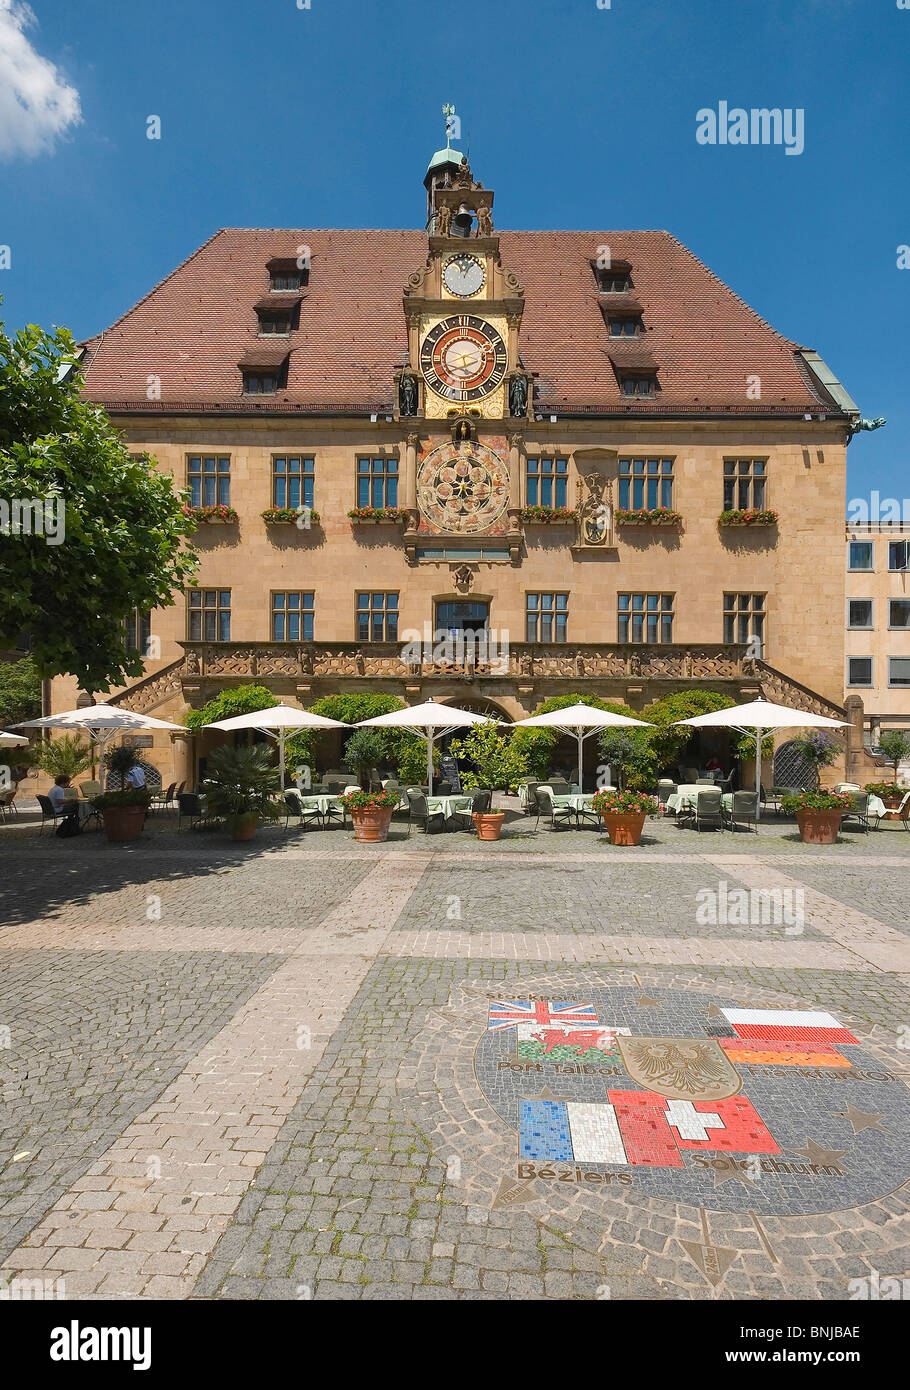 Deutschland-Baden-Württemberg-Heilbronn Rathaus gepflasterten Boden Mosaik Twin Städte Solothurn Port Talbot Béziers Stock Hafen Stockfoto